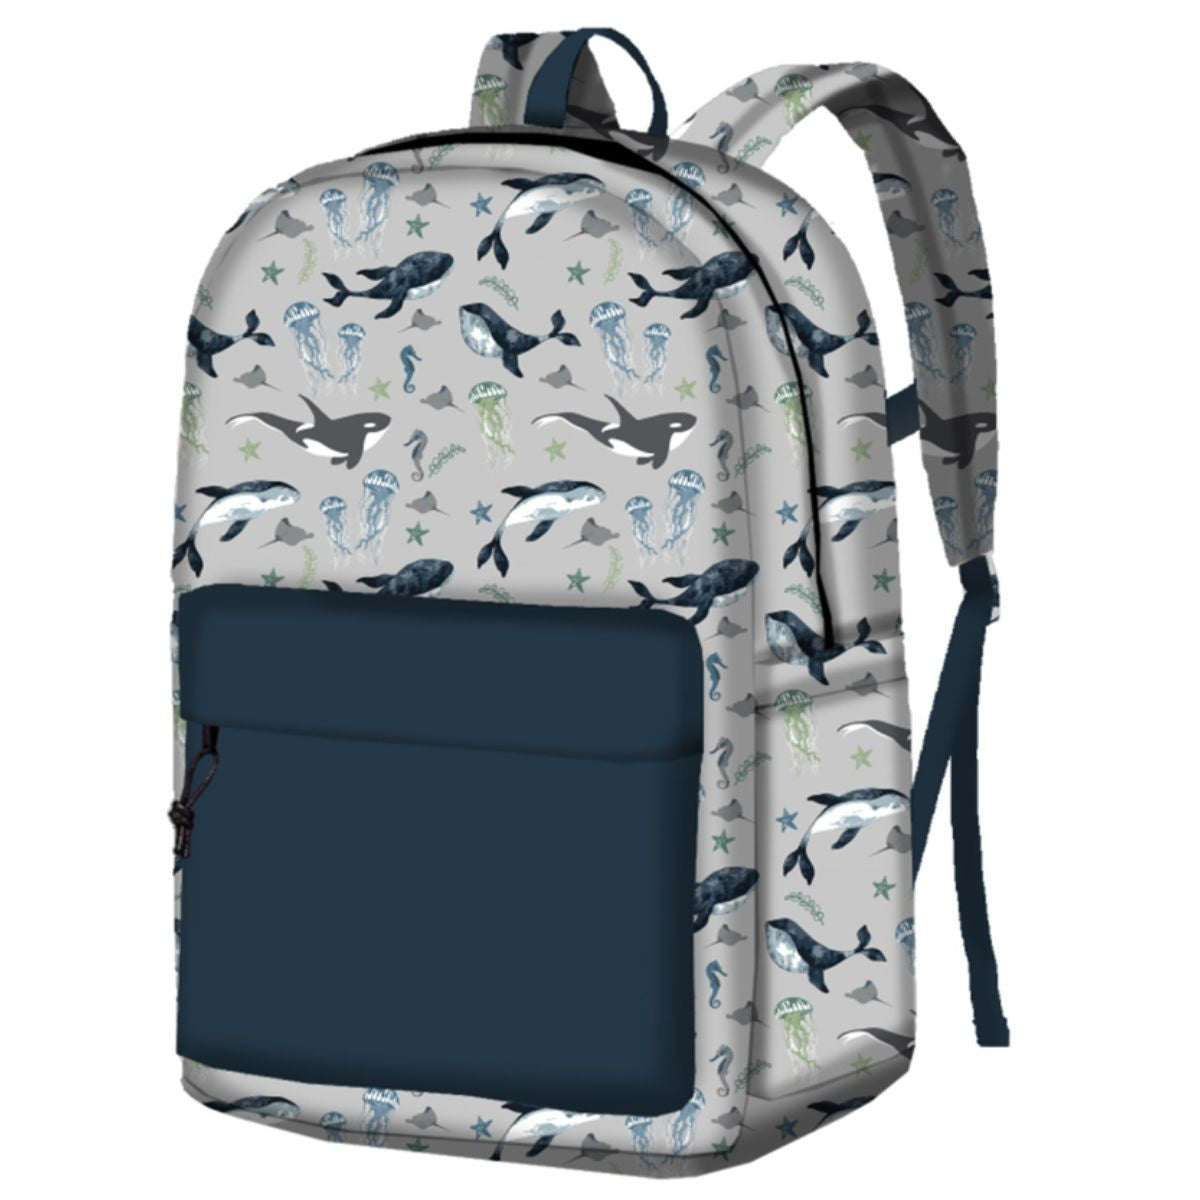 Sea Life Backpack